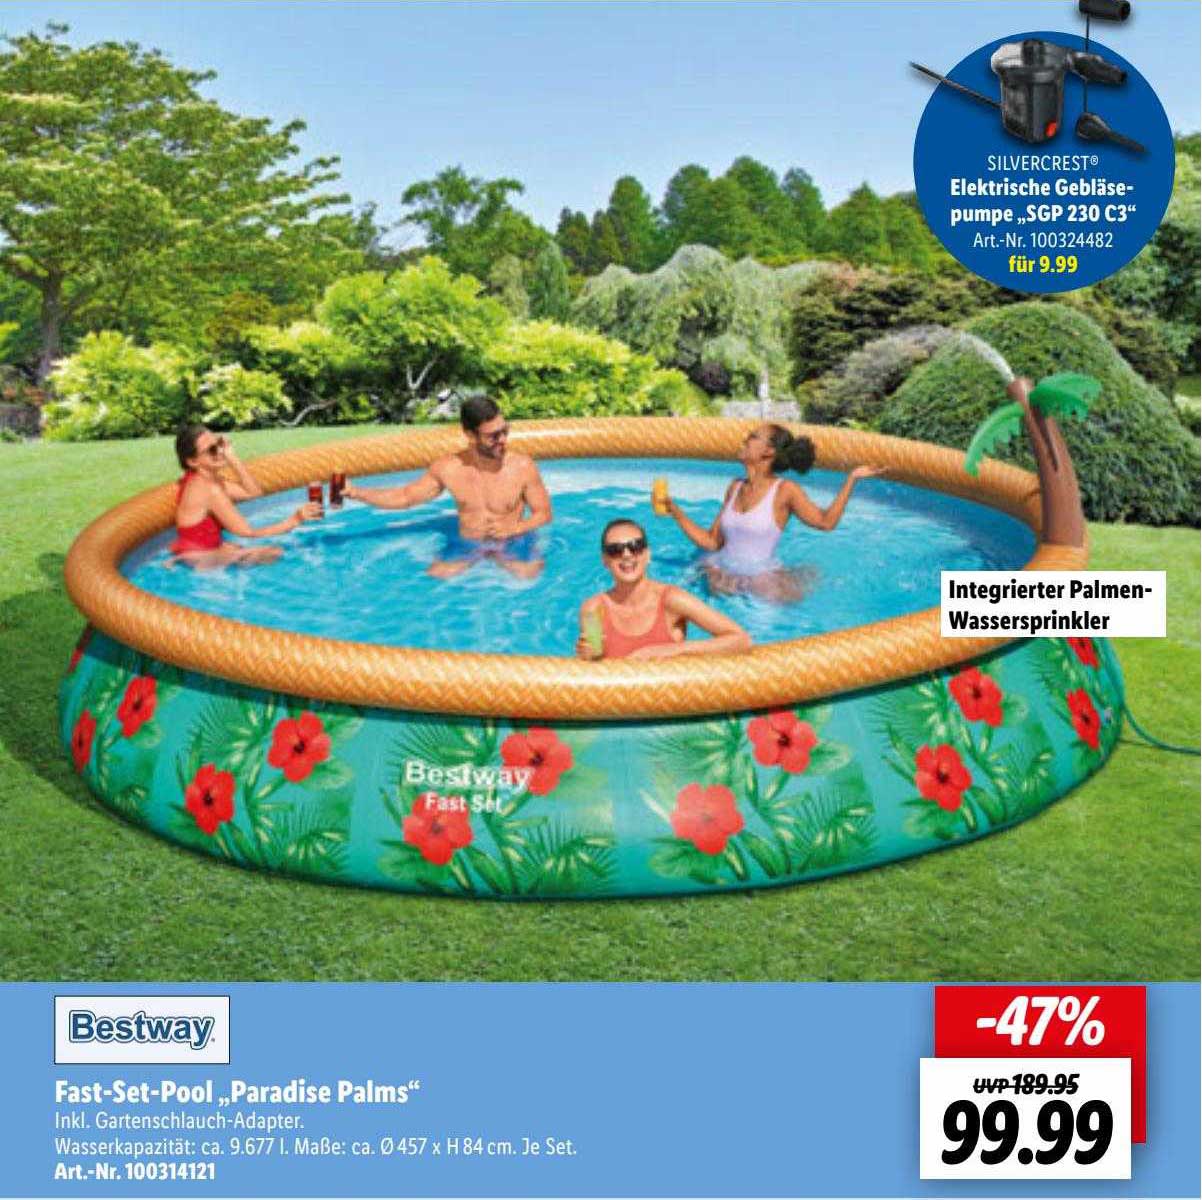 Bestway bei „paradise Lidl Fast-set-pool Angebot Palms”